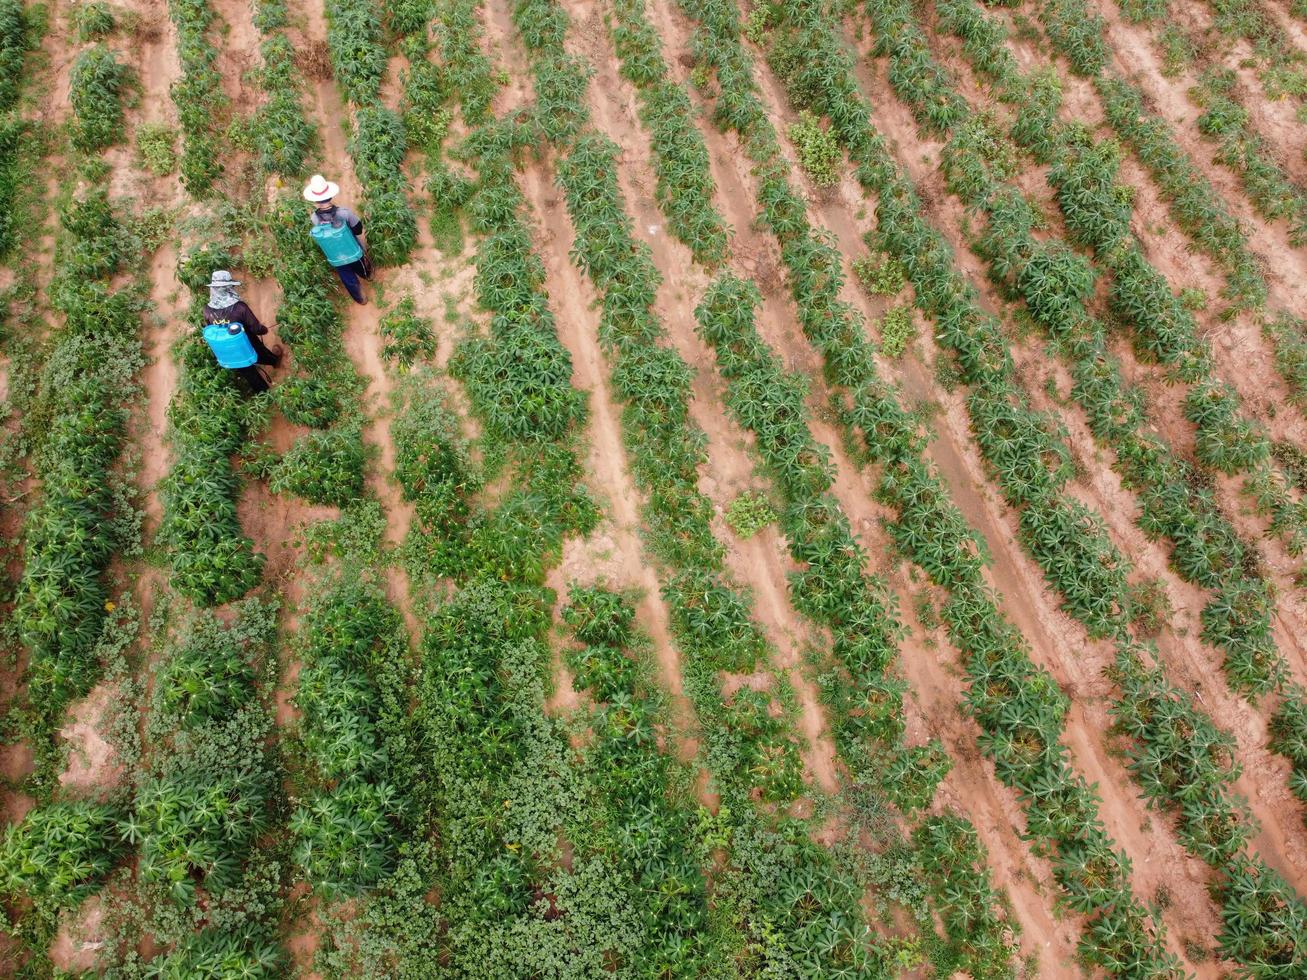 boeren spuiten giftige bestrijdingsmiddelen of bestrijdingsmiddelen op landbouwpercelen. onkruidbestrijding industriële landbouw thema. luchtfoto's van drones foto